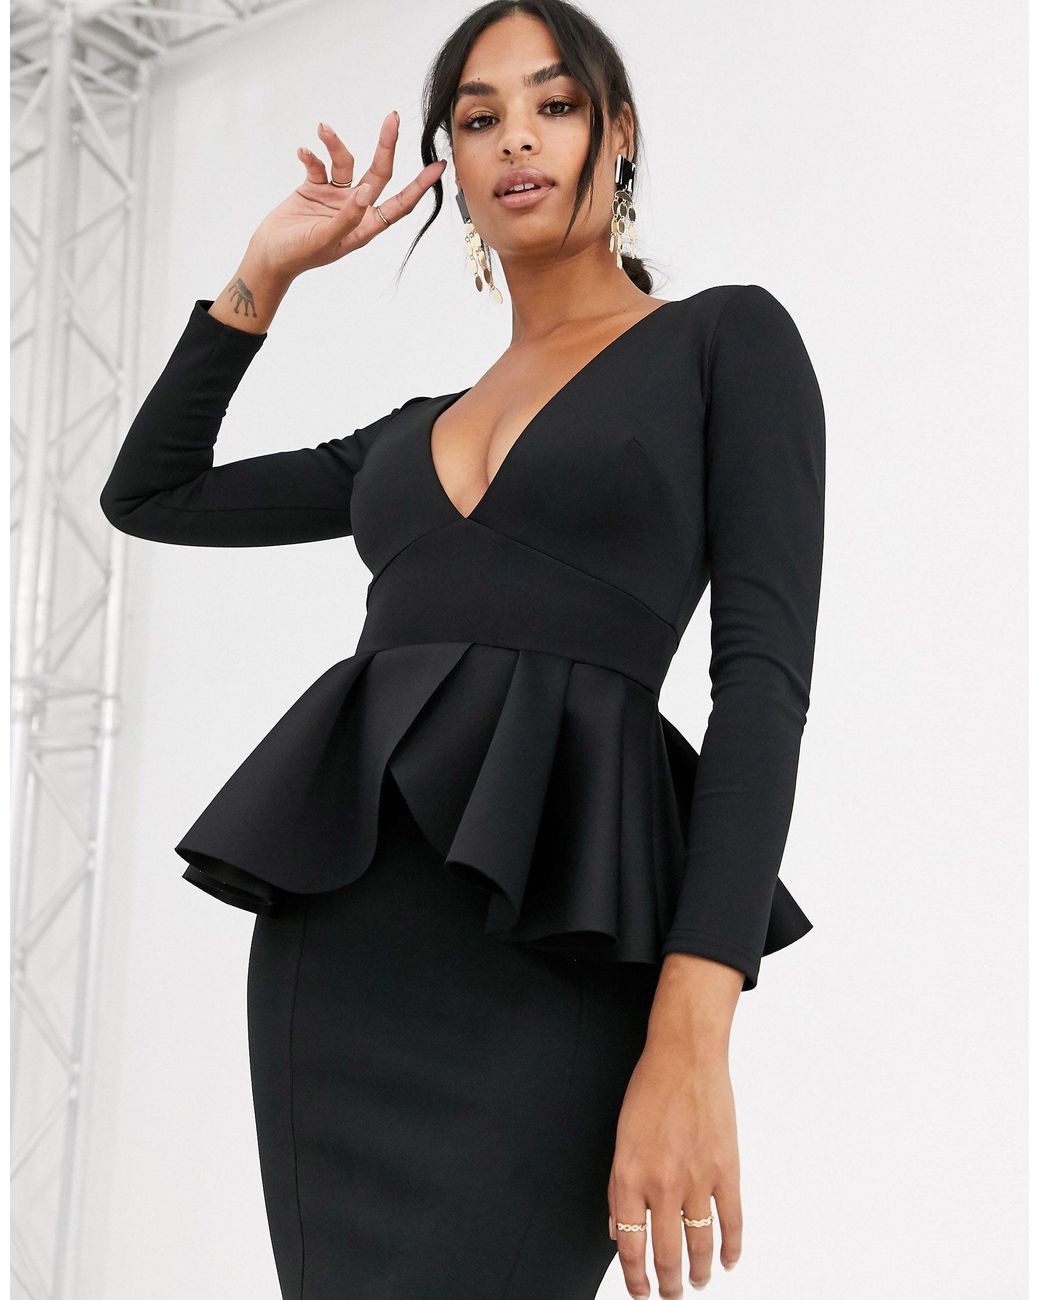 Best Selling Knit Peplum Dress for crossdressers – En Femme